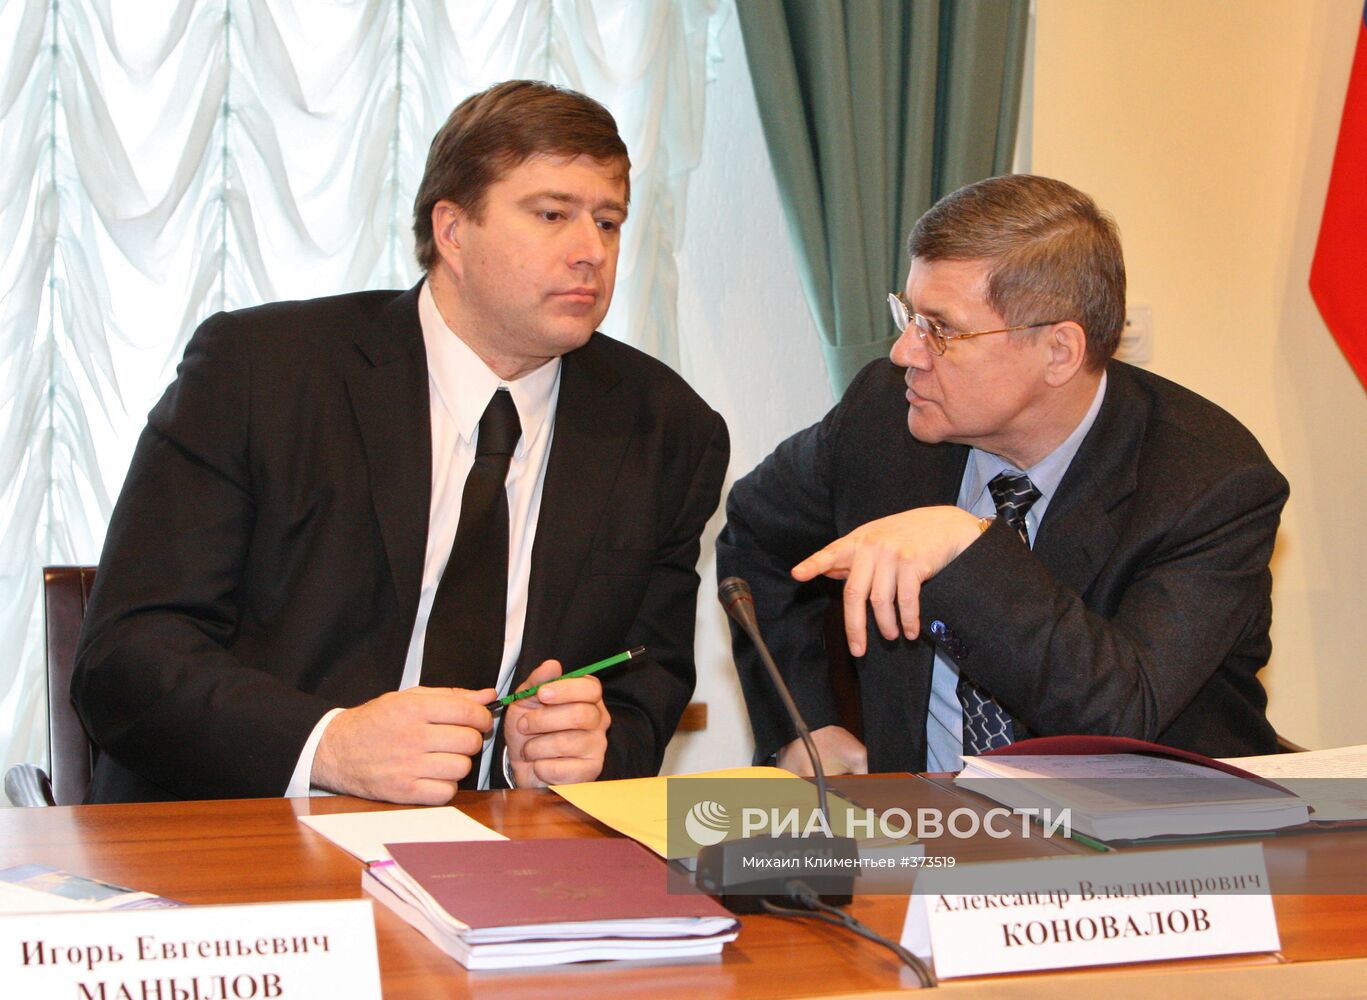 Заседание президиума Госсовета РФ в Вологде